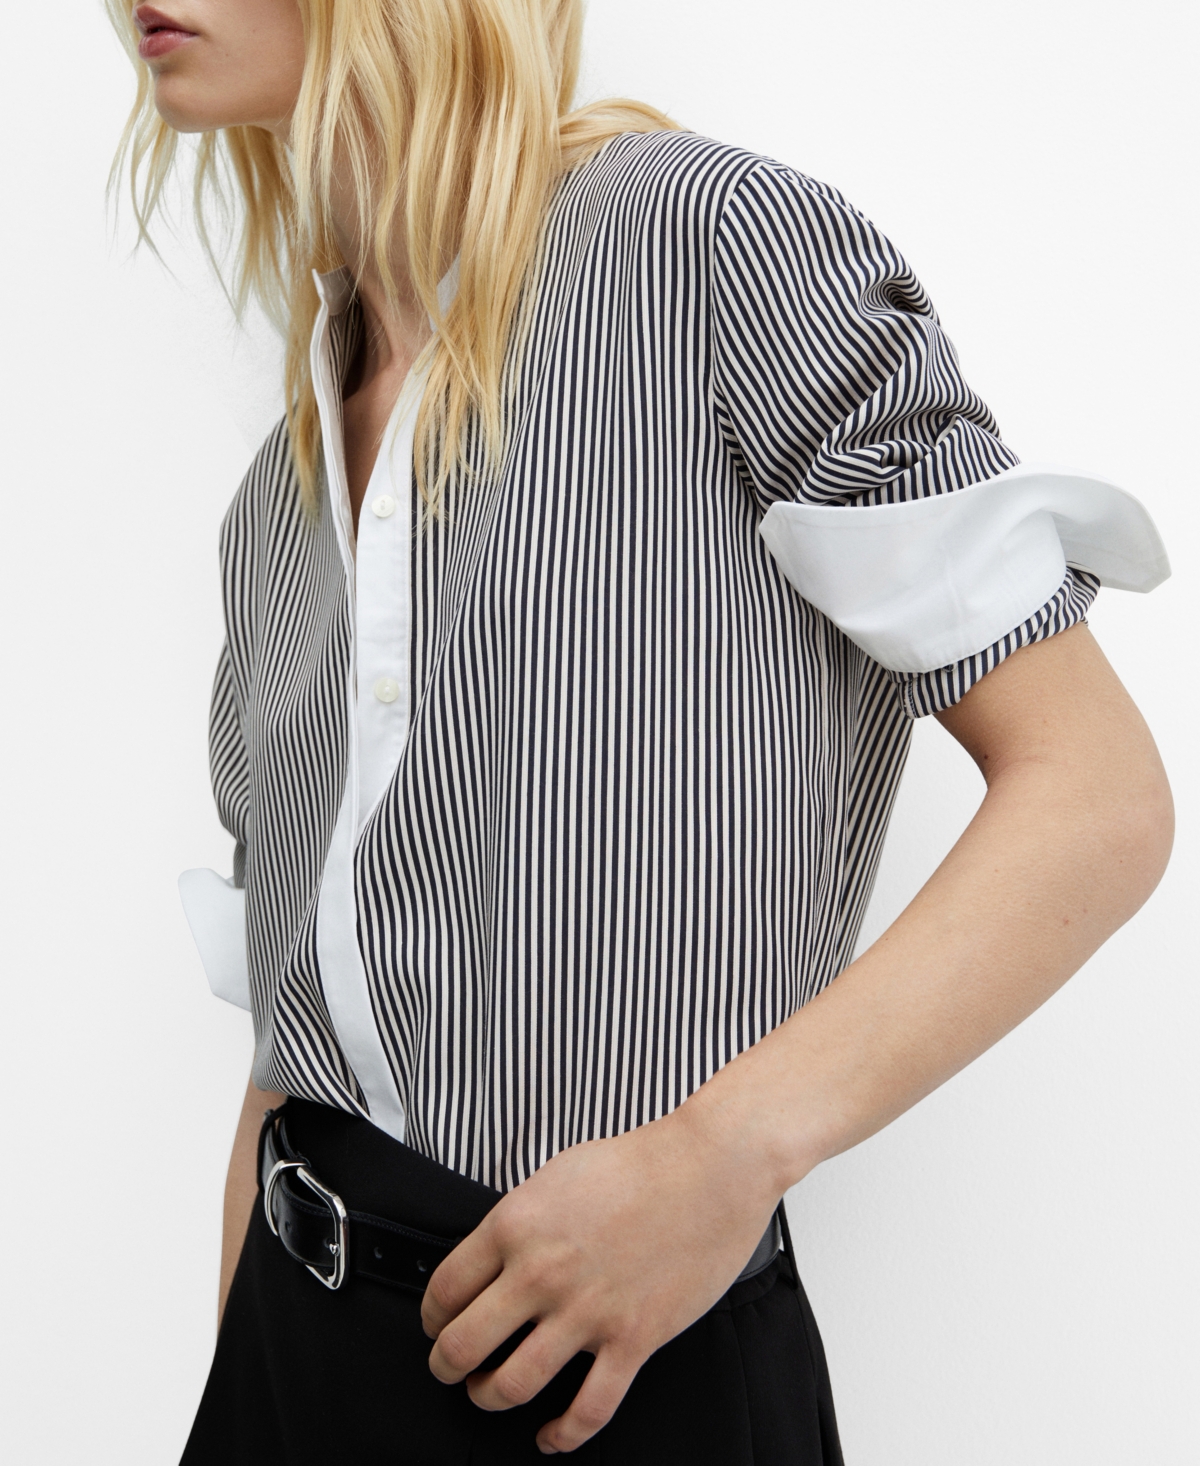 Women's Contrast Striped Shirt - Light Beig